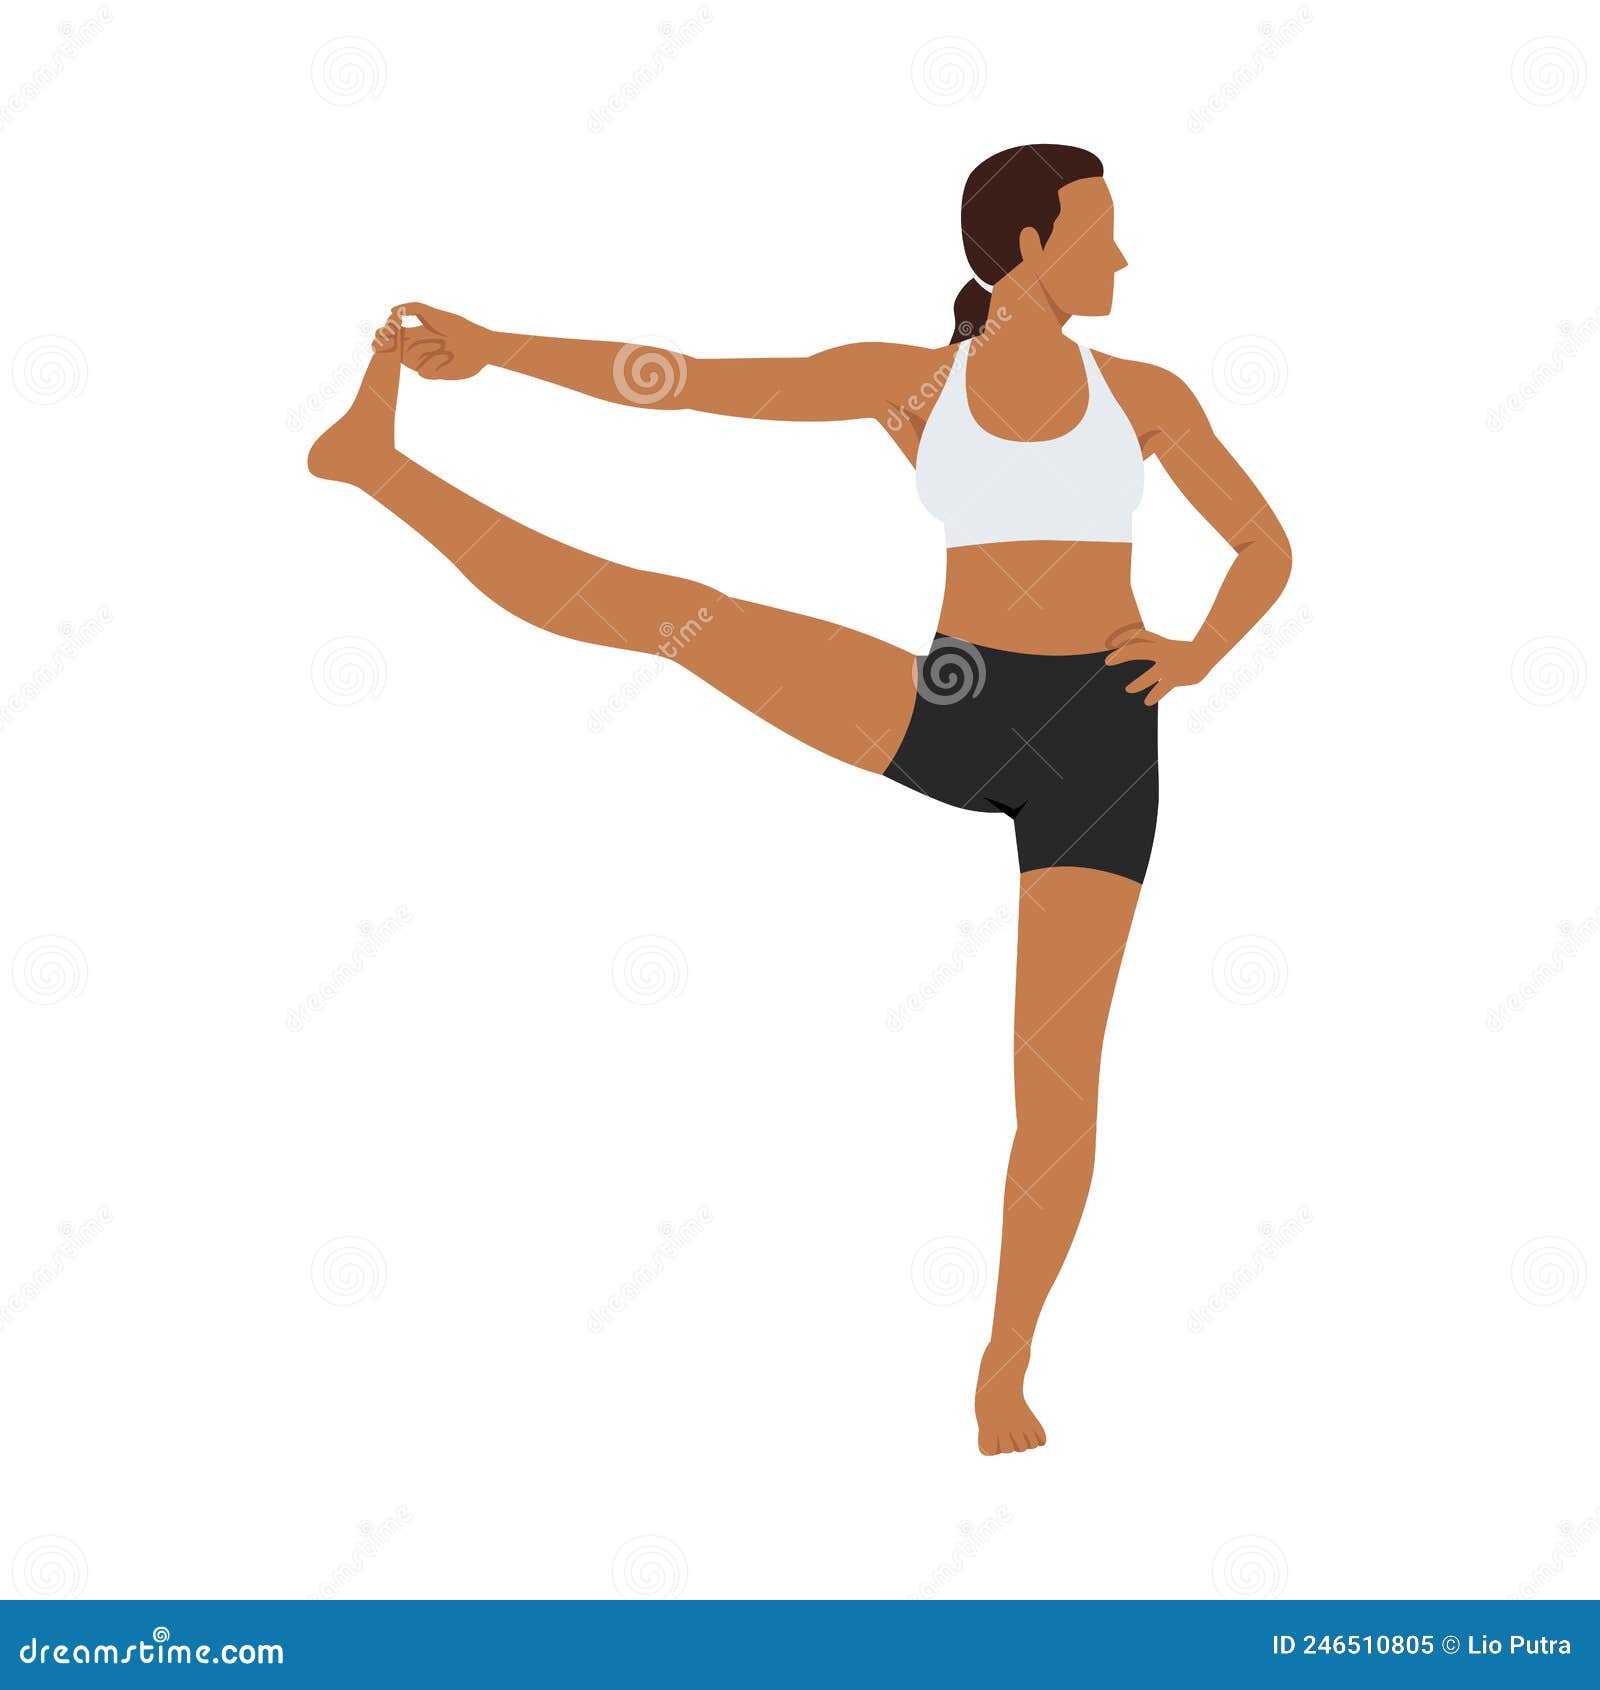 How To Do Reclining Big Toe Pose - YogaToday.com